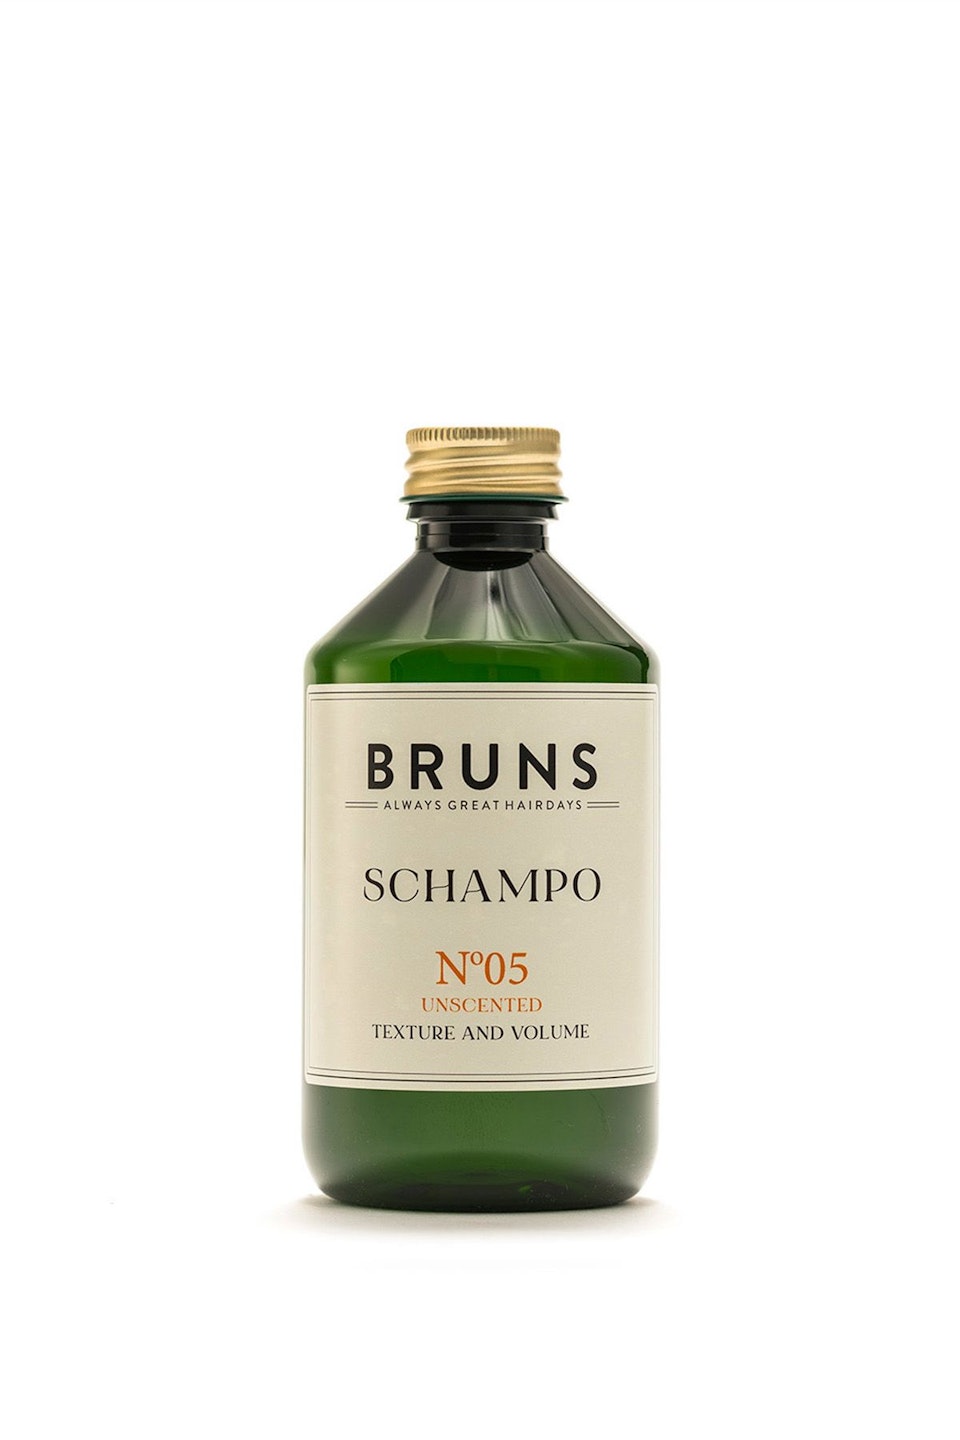 BRUNS SCHAMPO NO.5